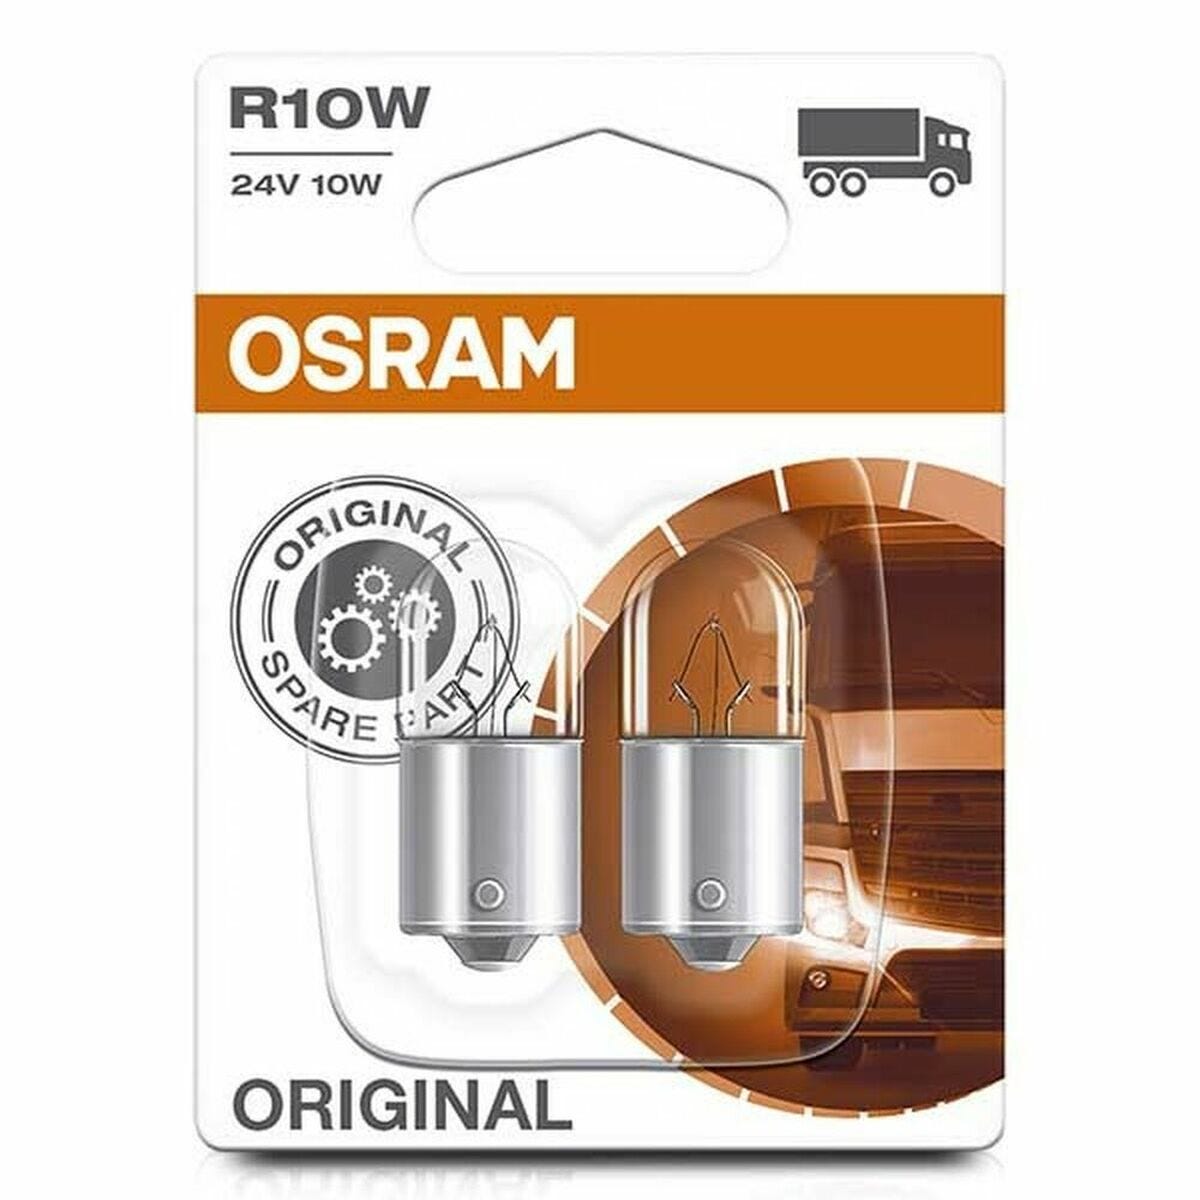 Ampoule pour voiture Osram OS5637-02B 10 W Camion 24 V R10W 0